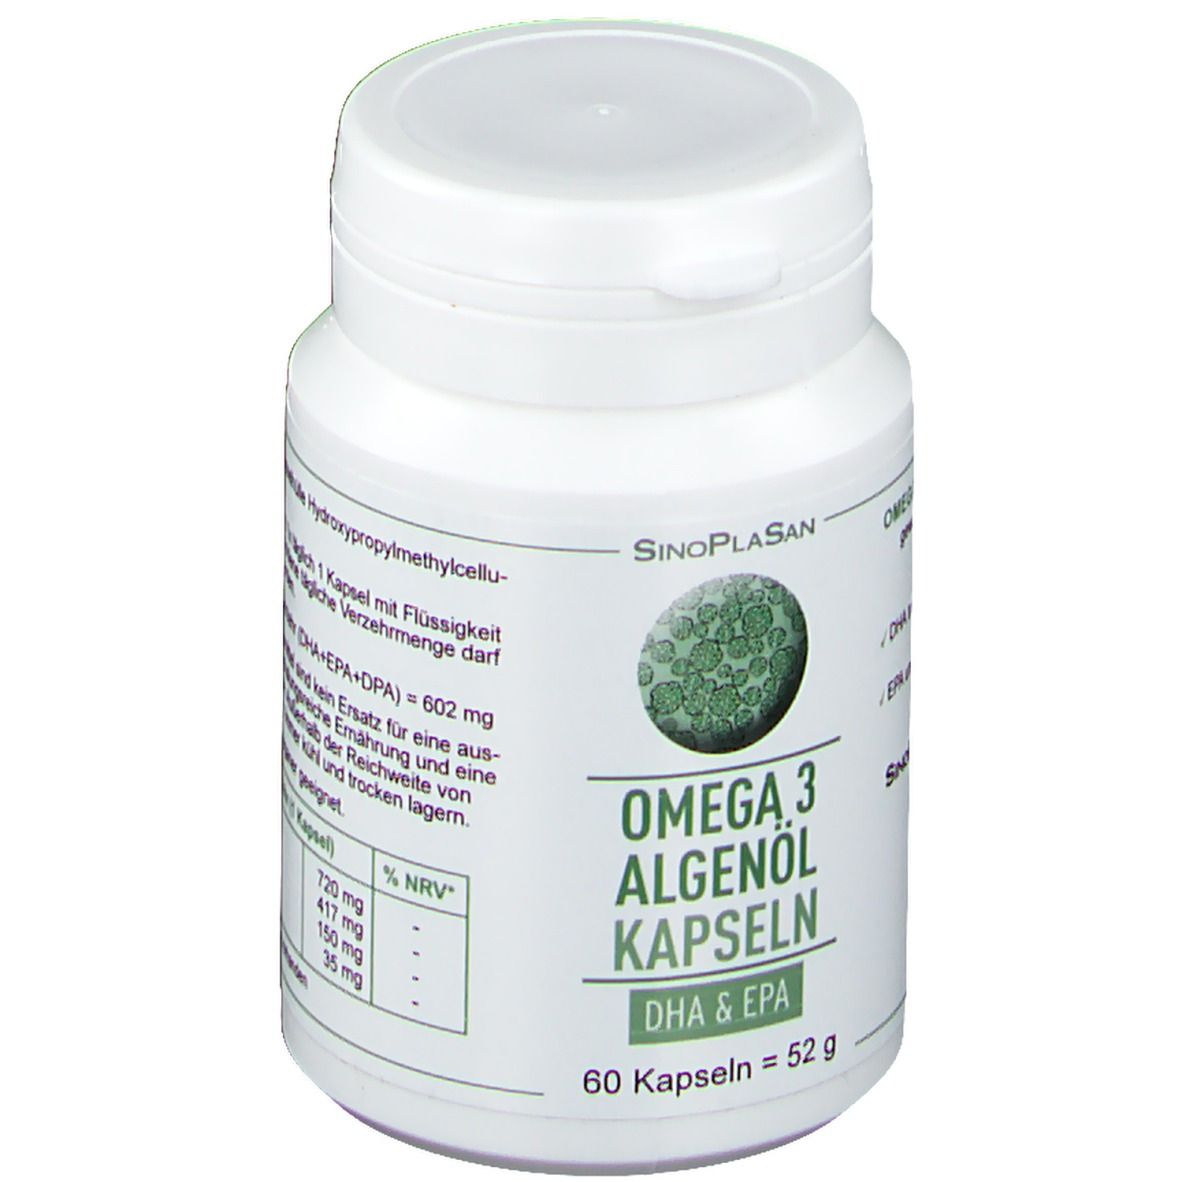 Omega-3 Huile d'algues DHA+EPA